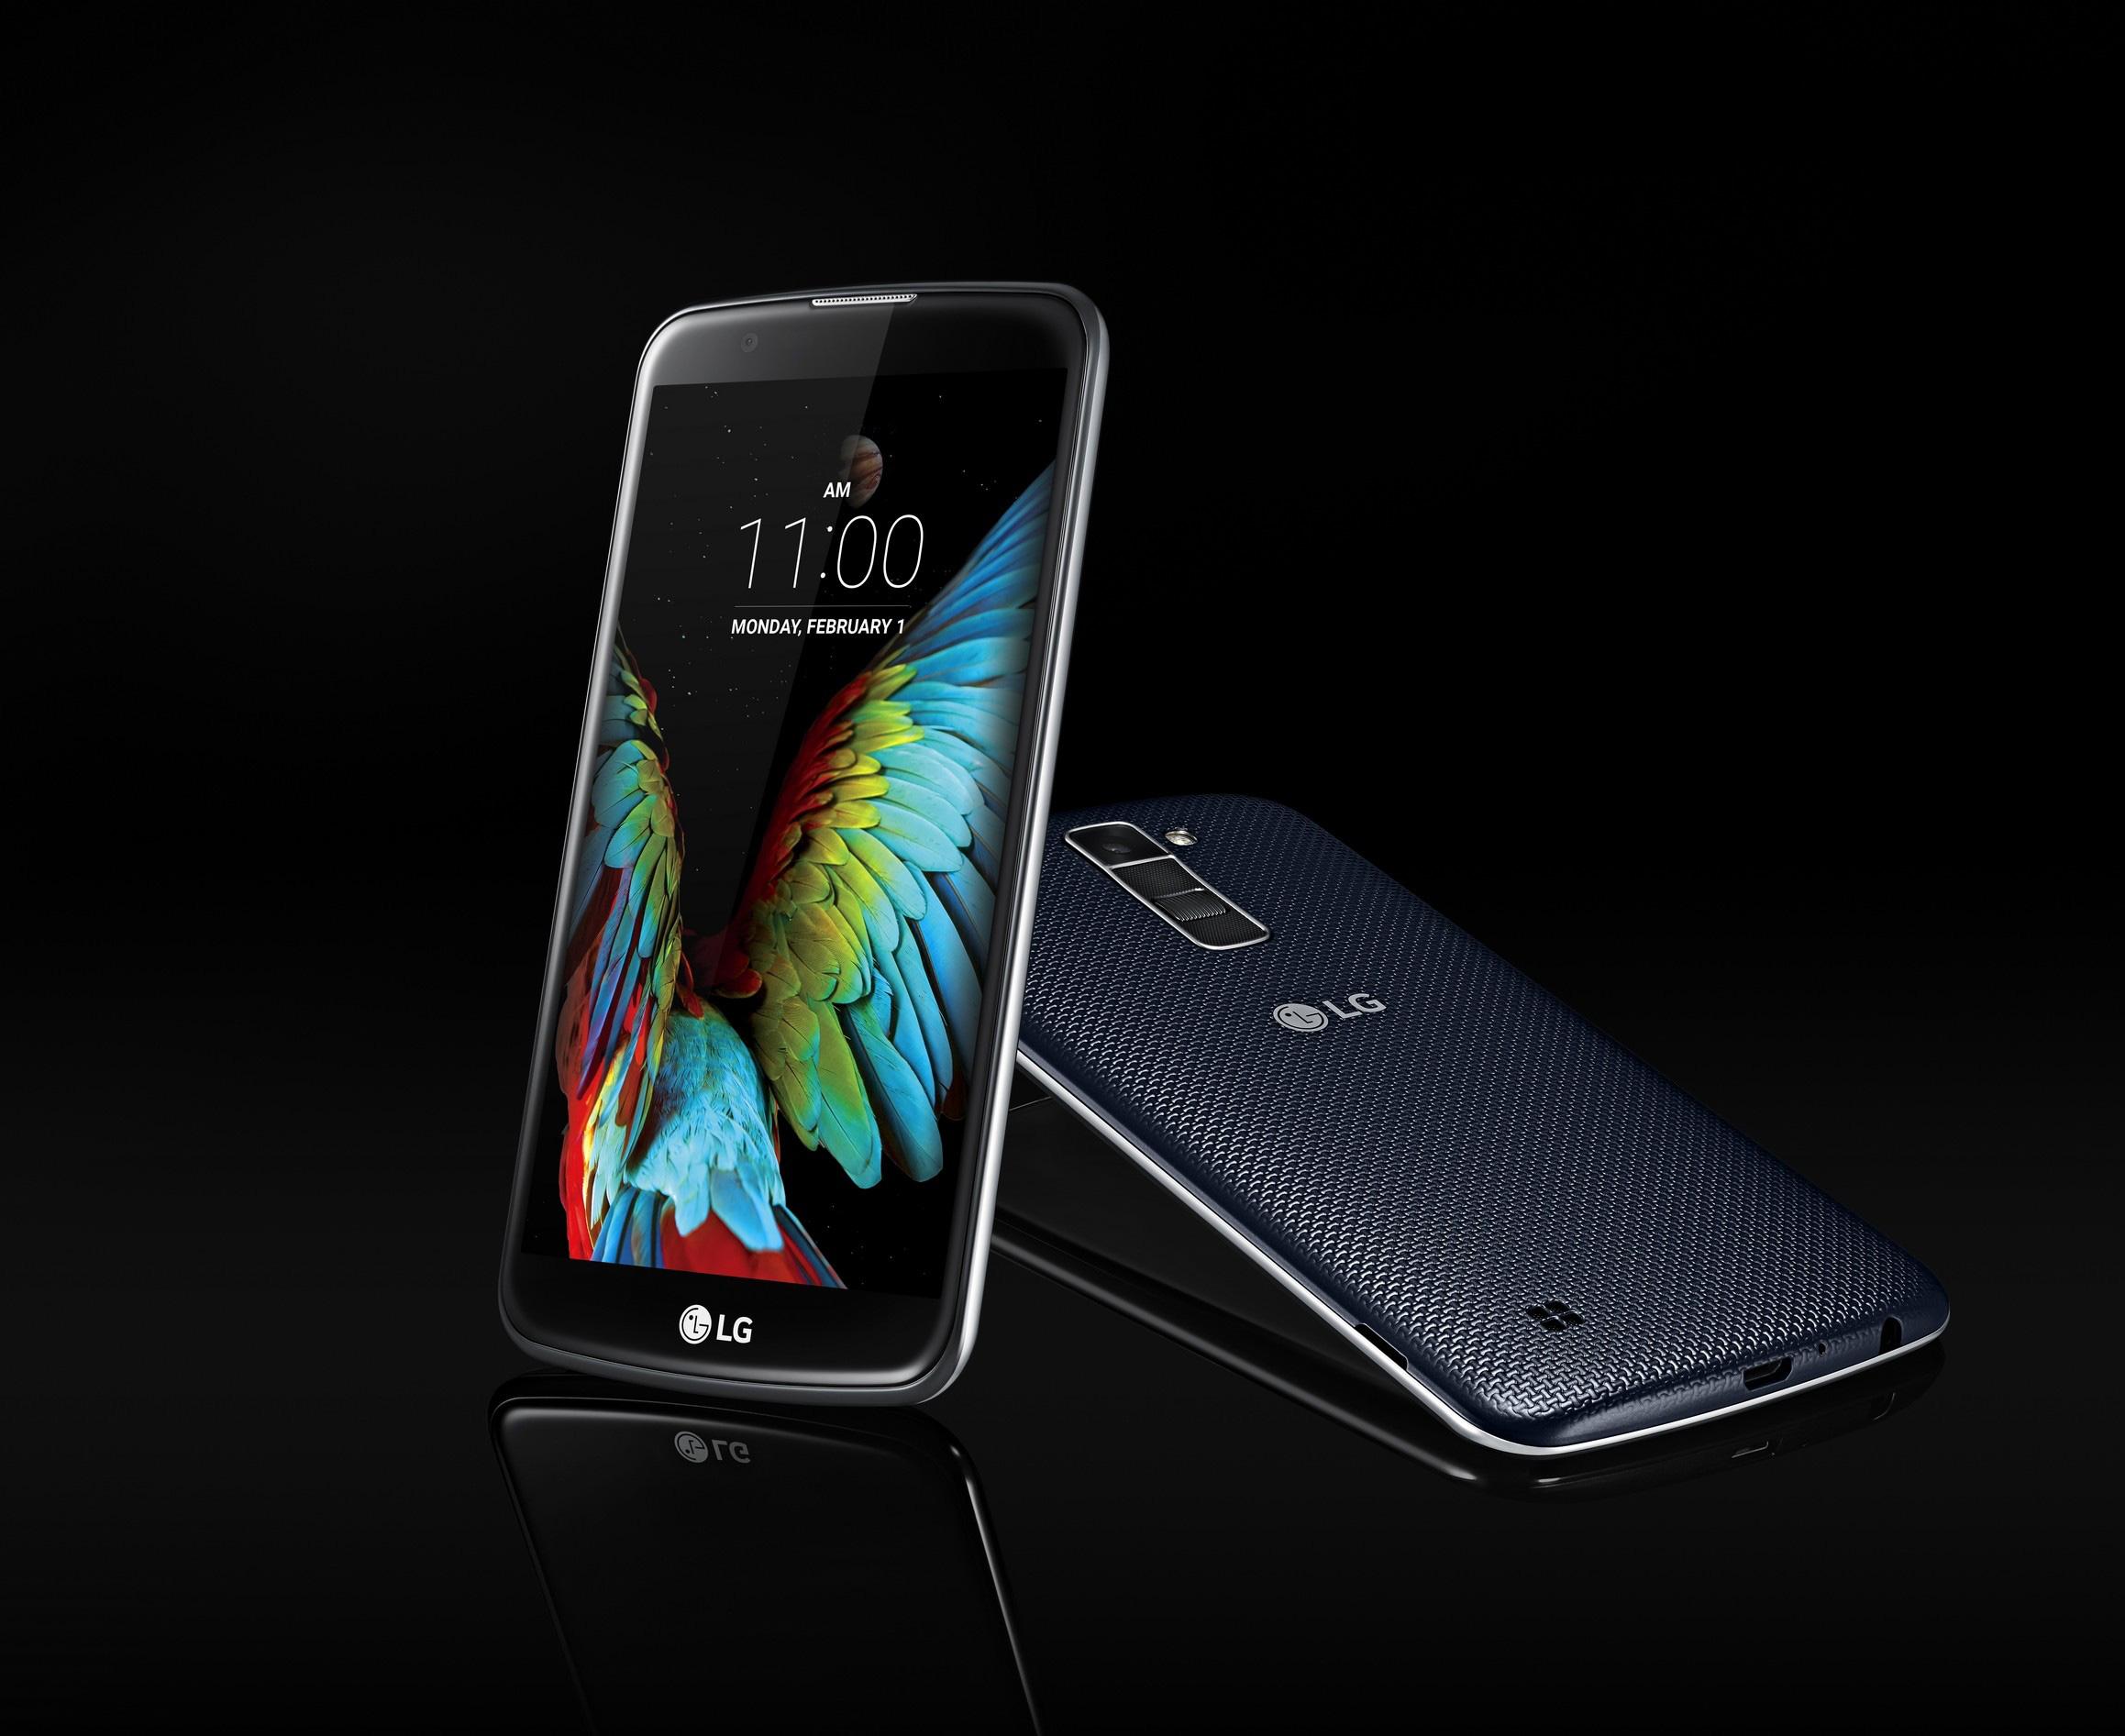 Phone House rebaja el Huawei P8 Lite Ed. Atlético de Madrid y el LG G4